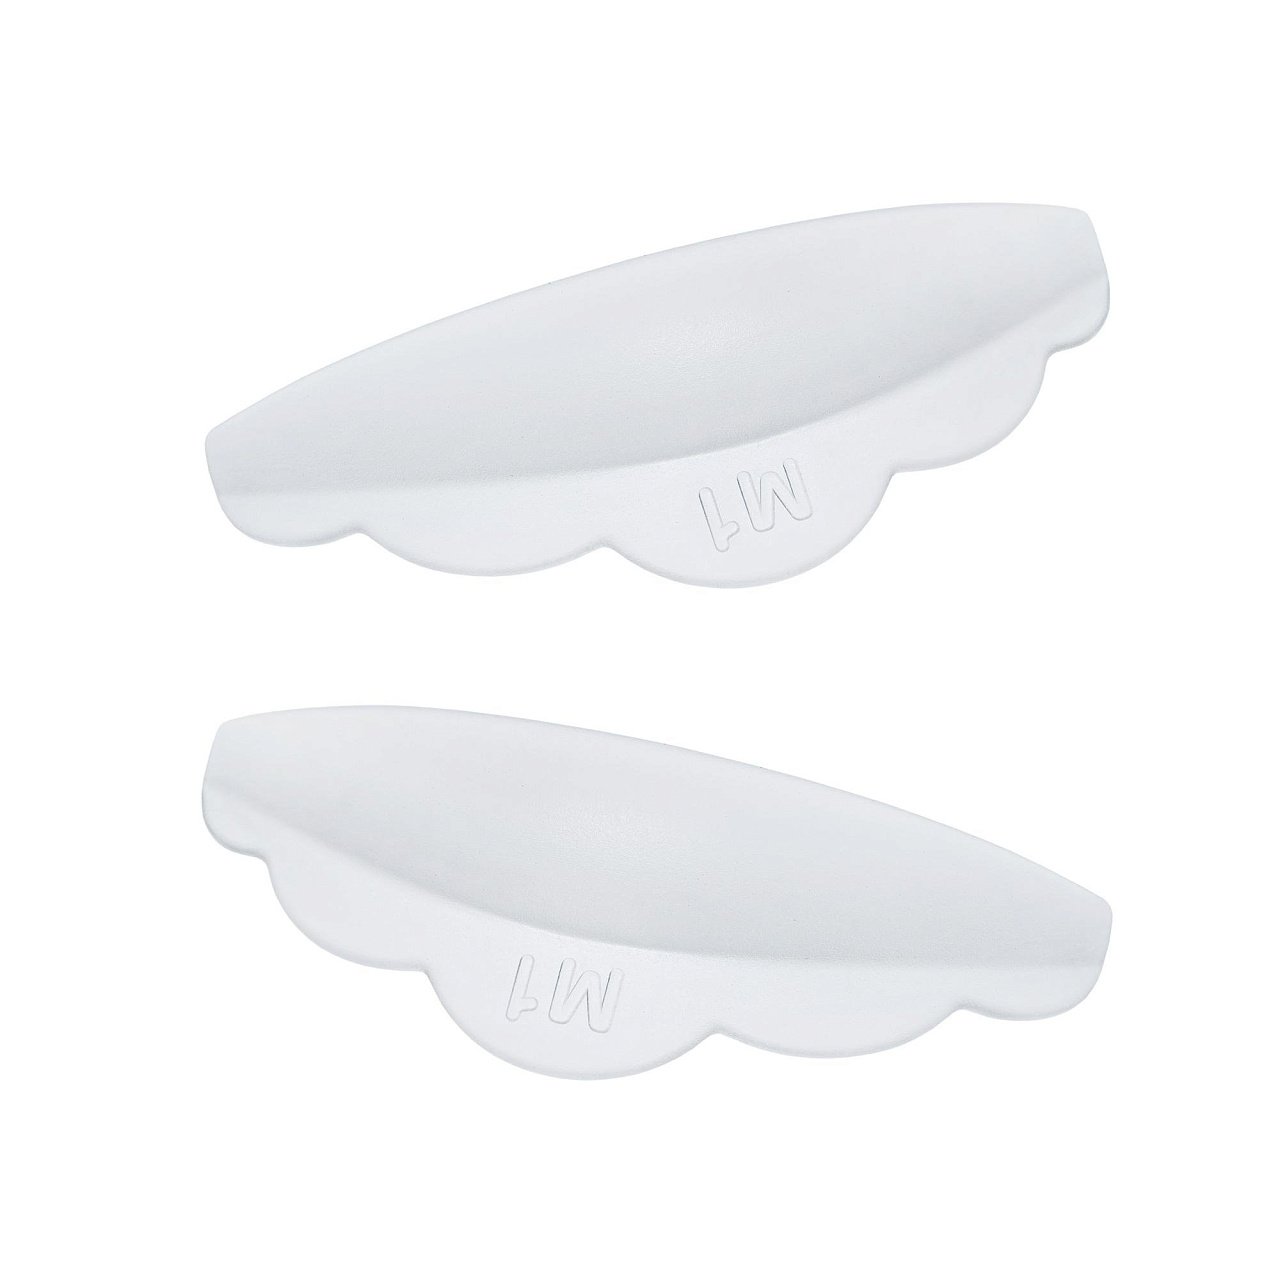 Валики Lash&Go силиконовые для ресниц 3 пары размер M1 валики ватные медицинские стоматологические нестерильные 30х10 мм 500 шт